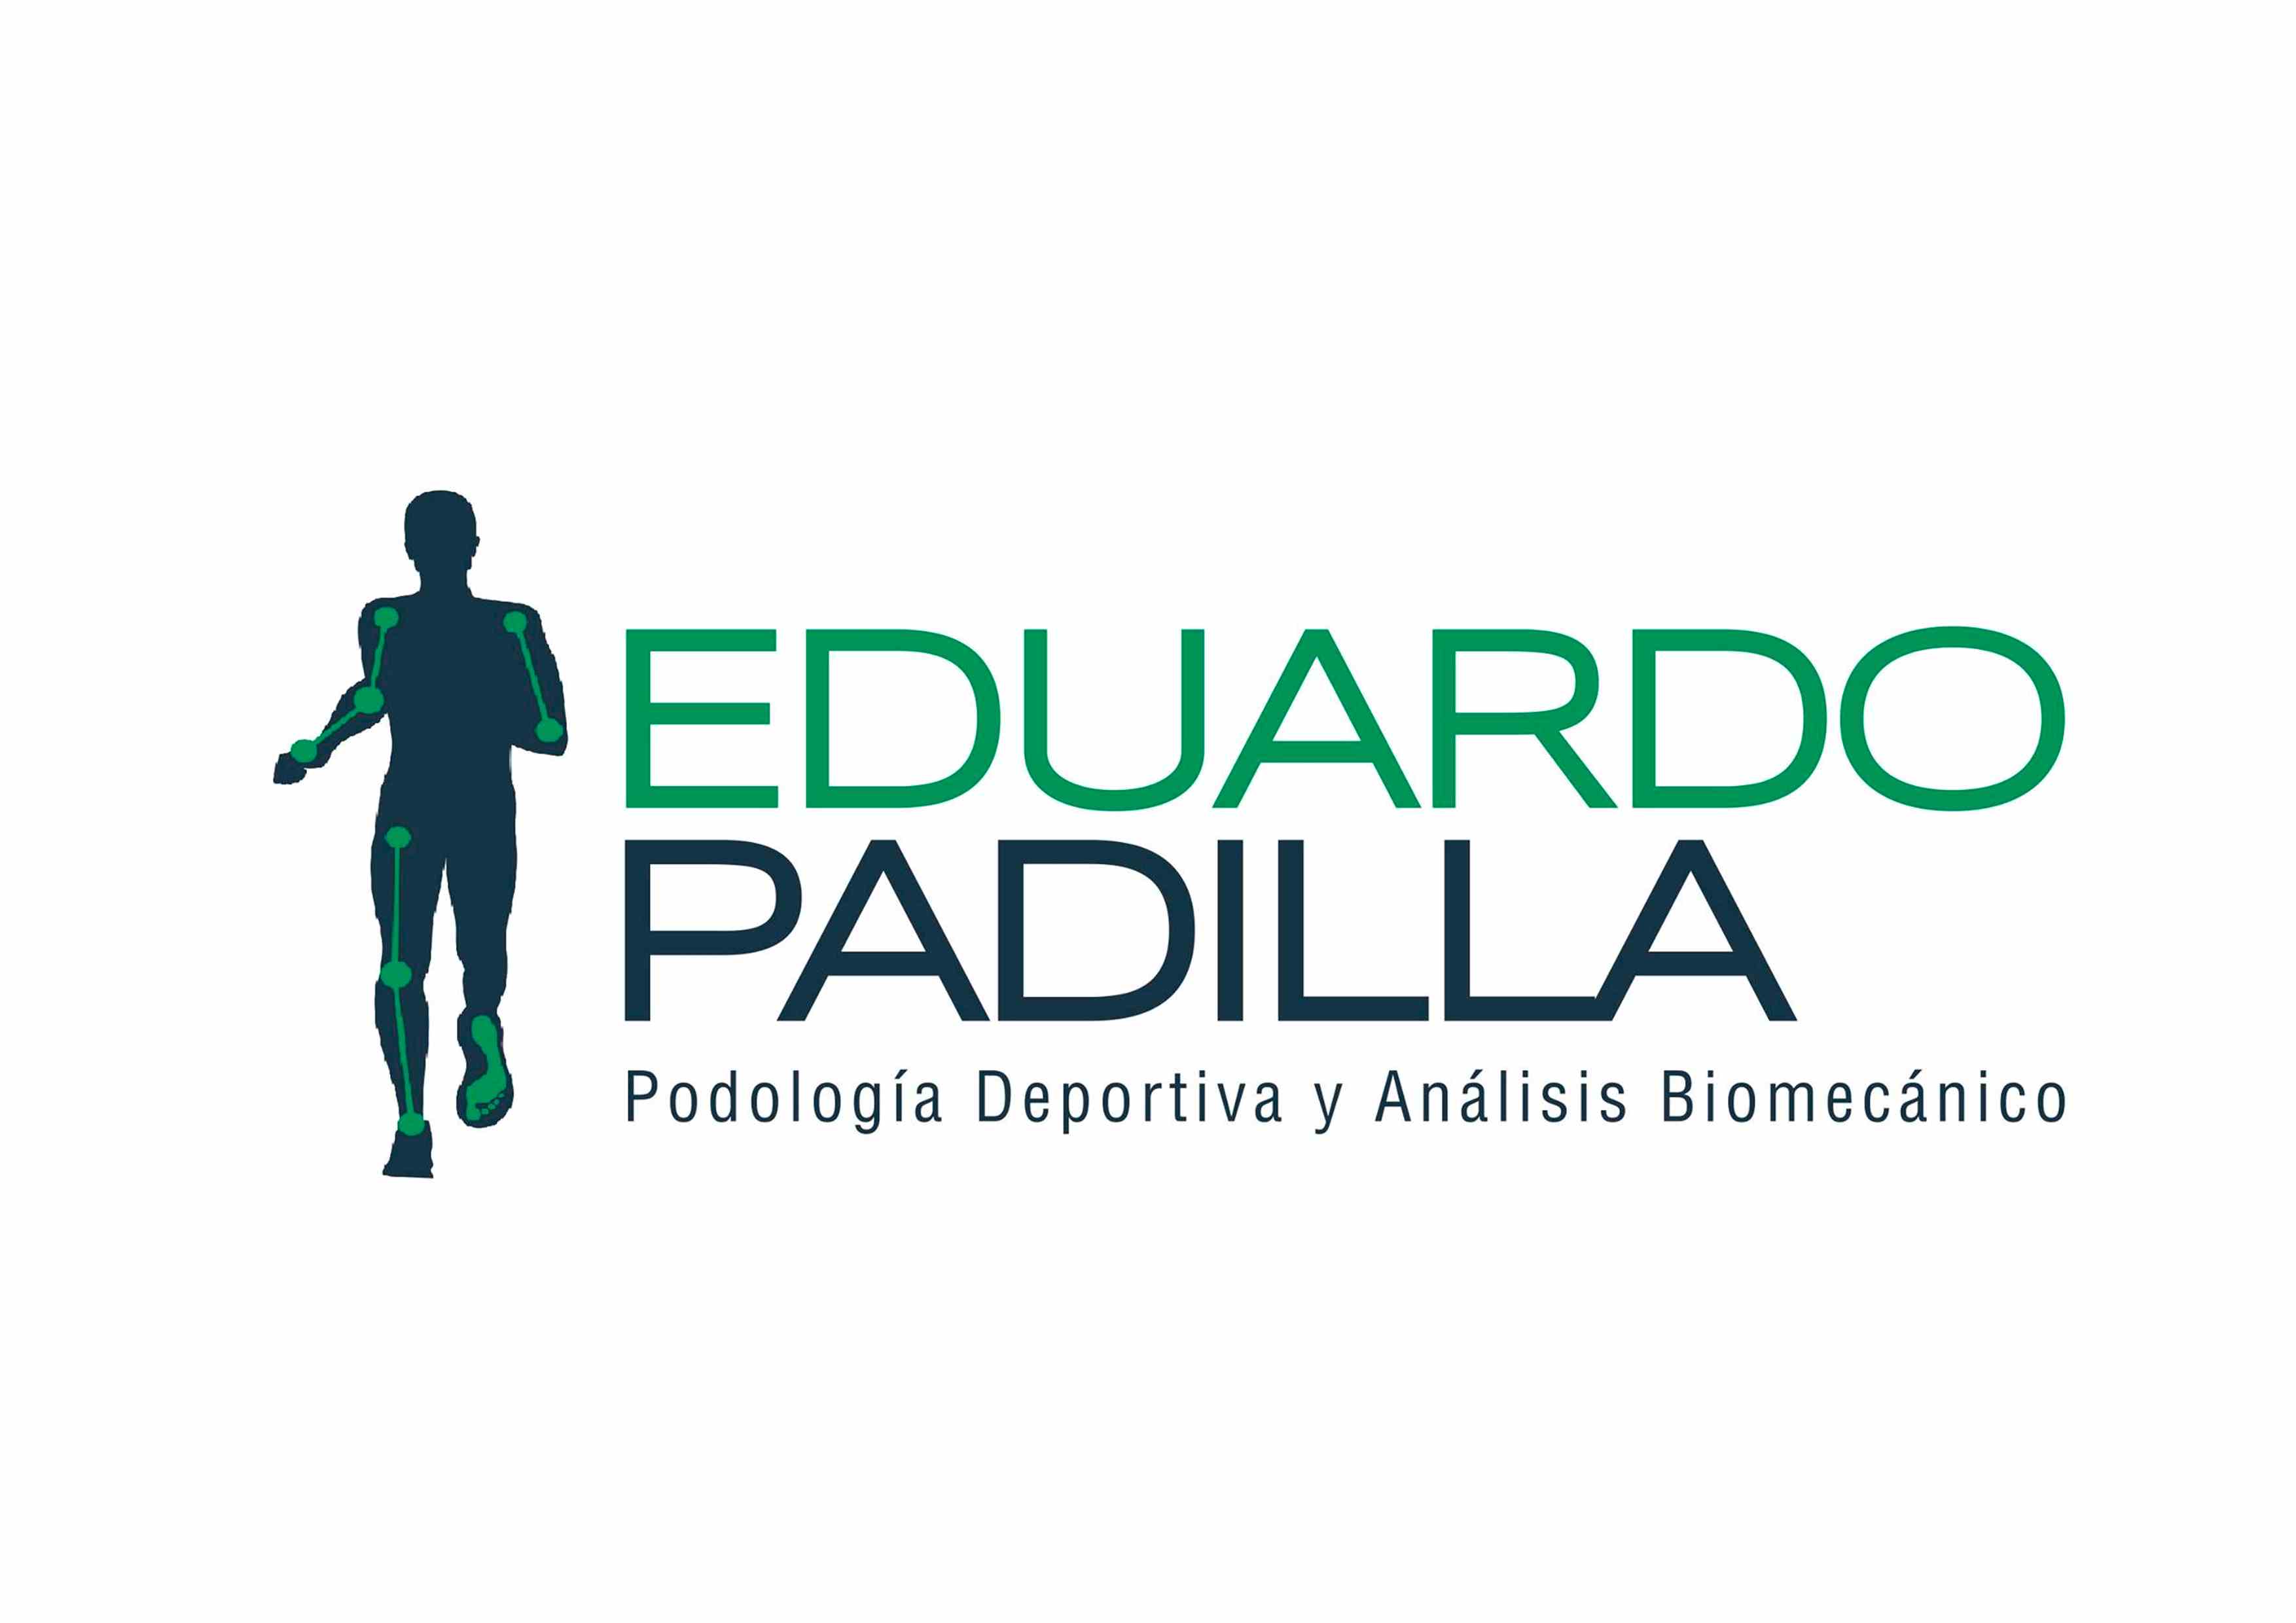 Podólogo Eduardo Padilla